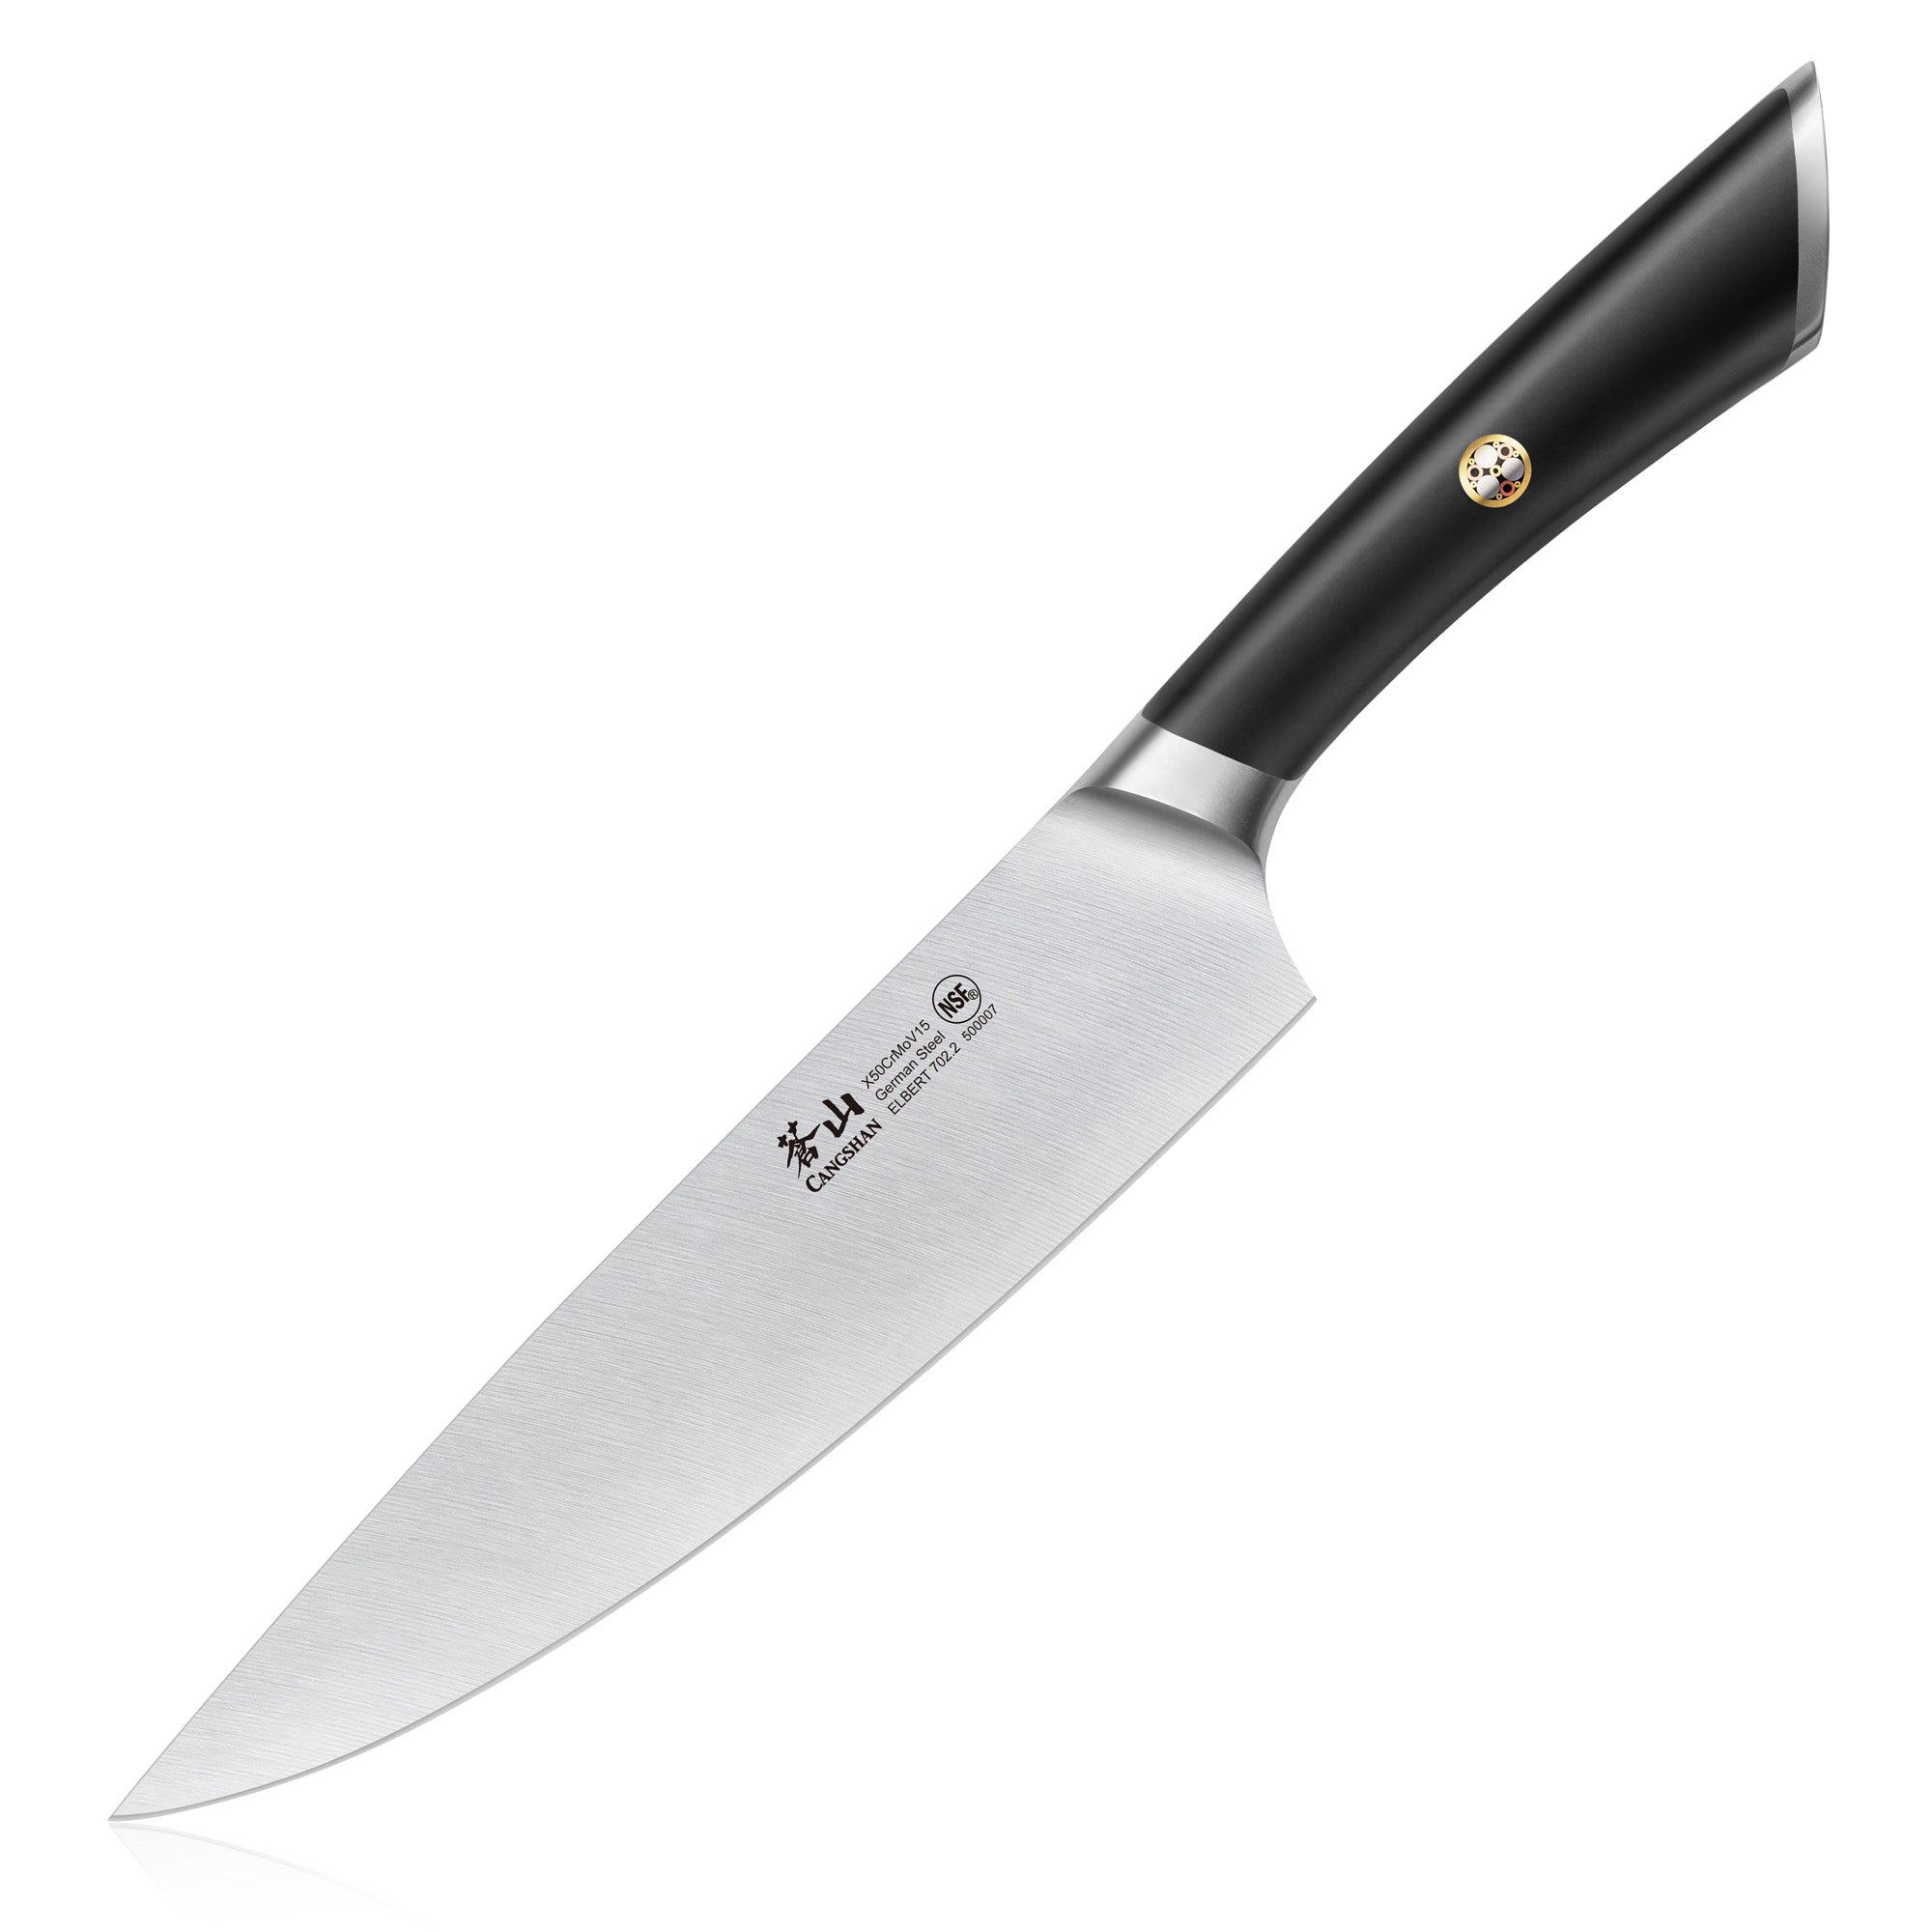 ELBERT Series Chef's Knives, Forged German Steel